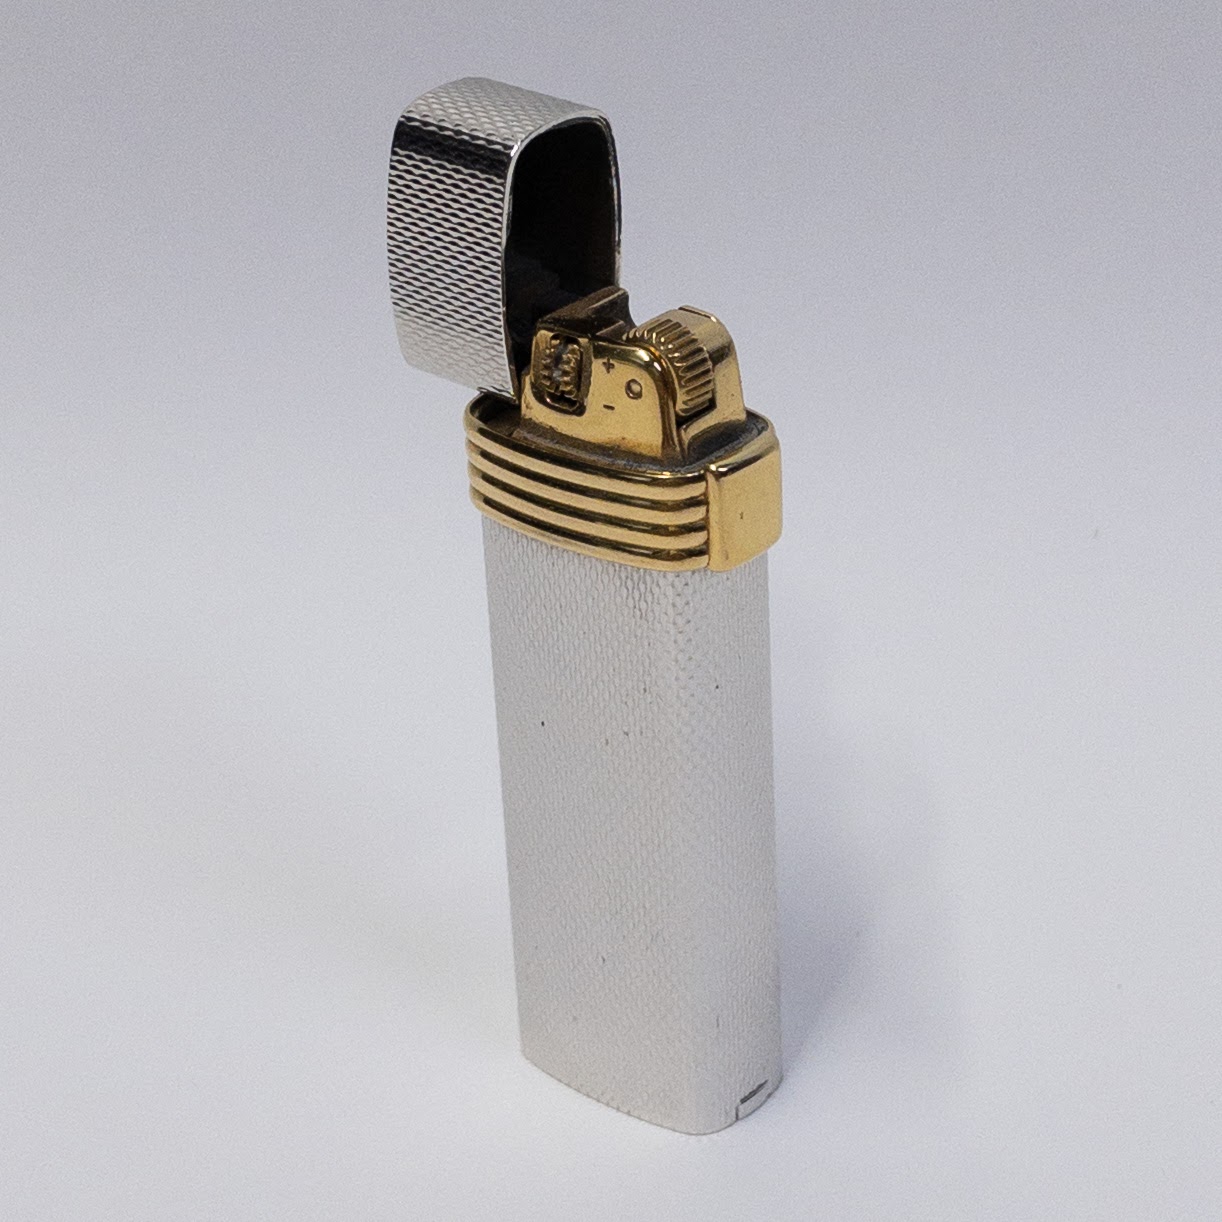 Christian Dior Vintage Cigarette Lighter